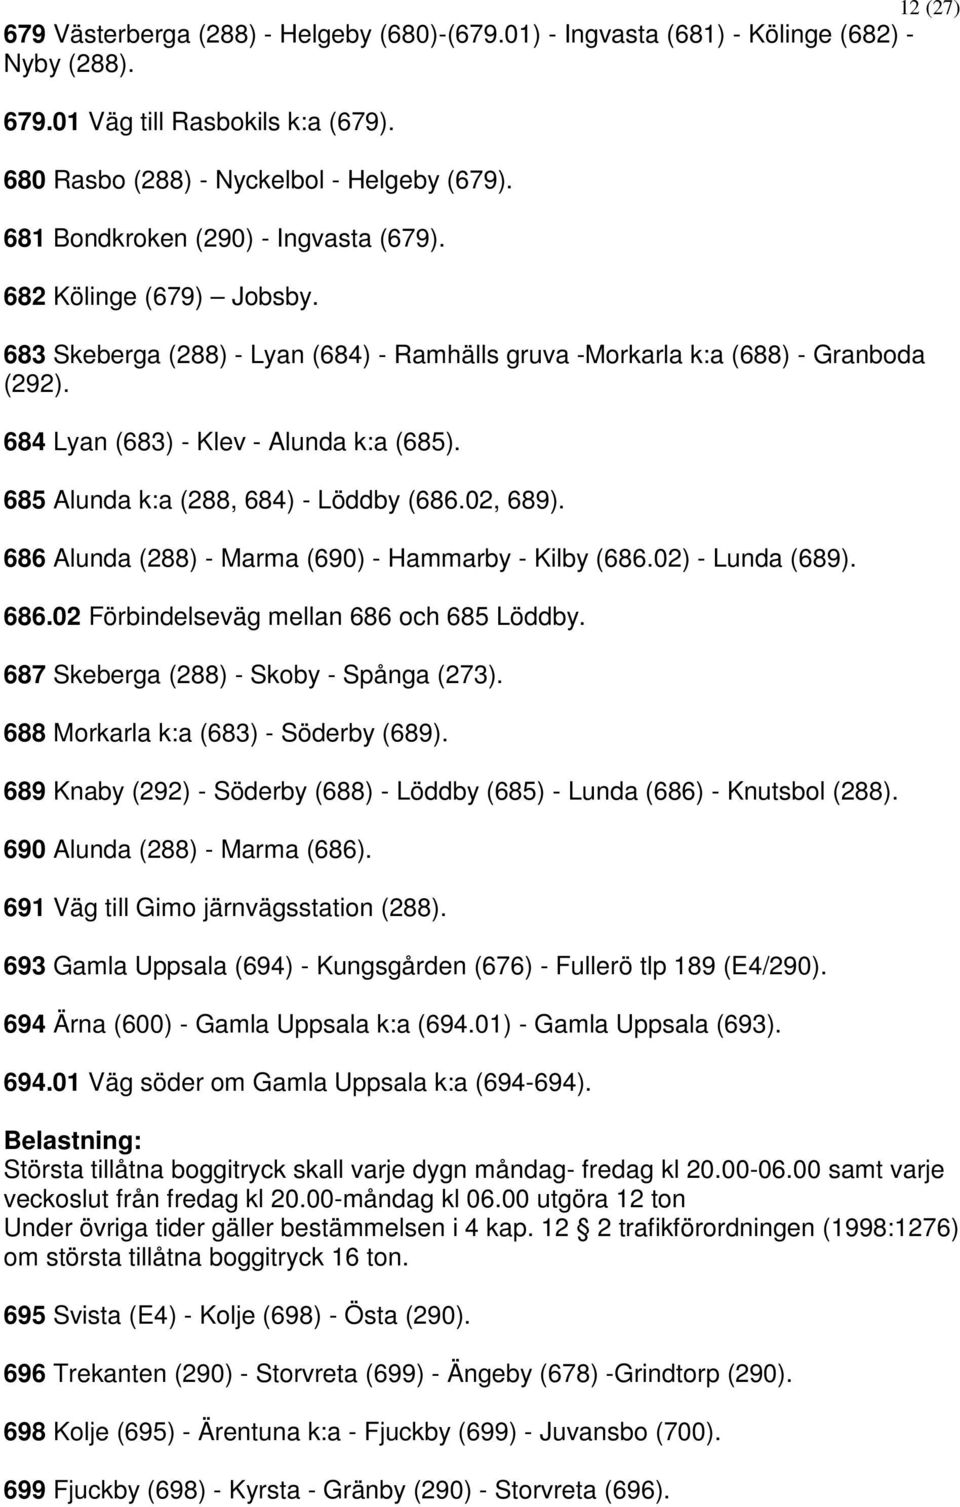 685 Alunda k:a (288, 684) - Löddby (686.02, 689). 686 Alunda (288) - Marma (690) - Hammarby - Kilby (686.02) - Lunda (689). 686.02 Förbindelseväg mellan 686 och 685 Löddby.